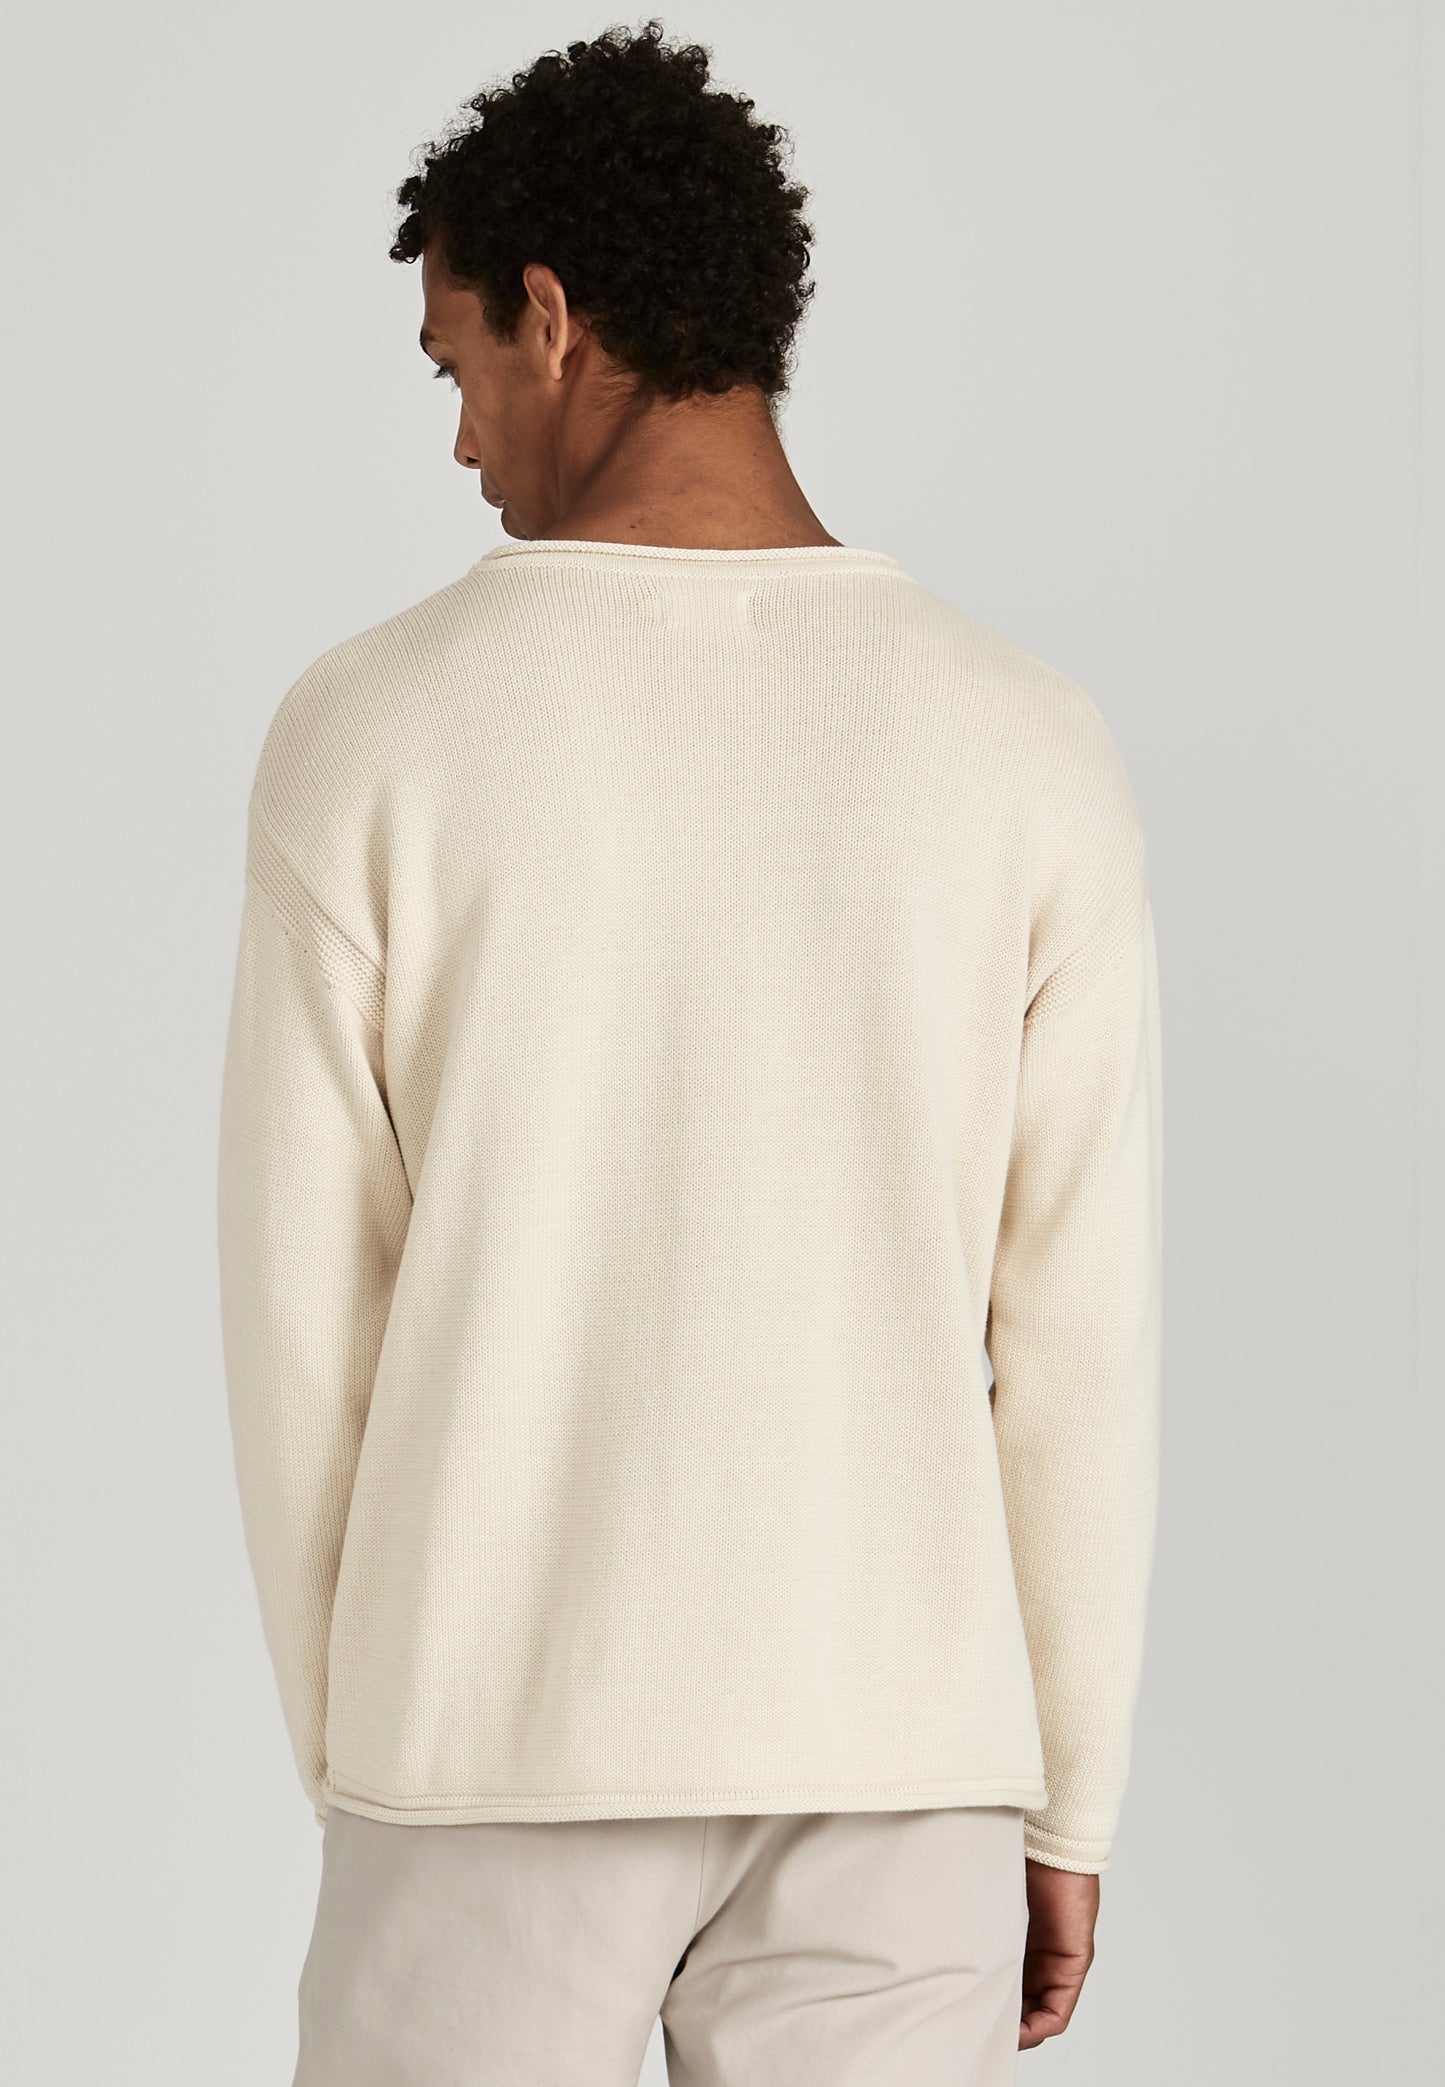 danny knit sweater, ungefärbt - givn